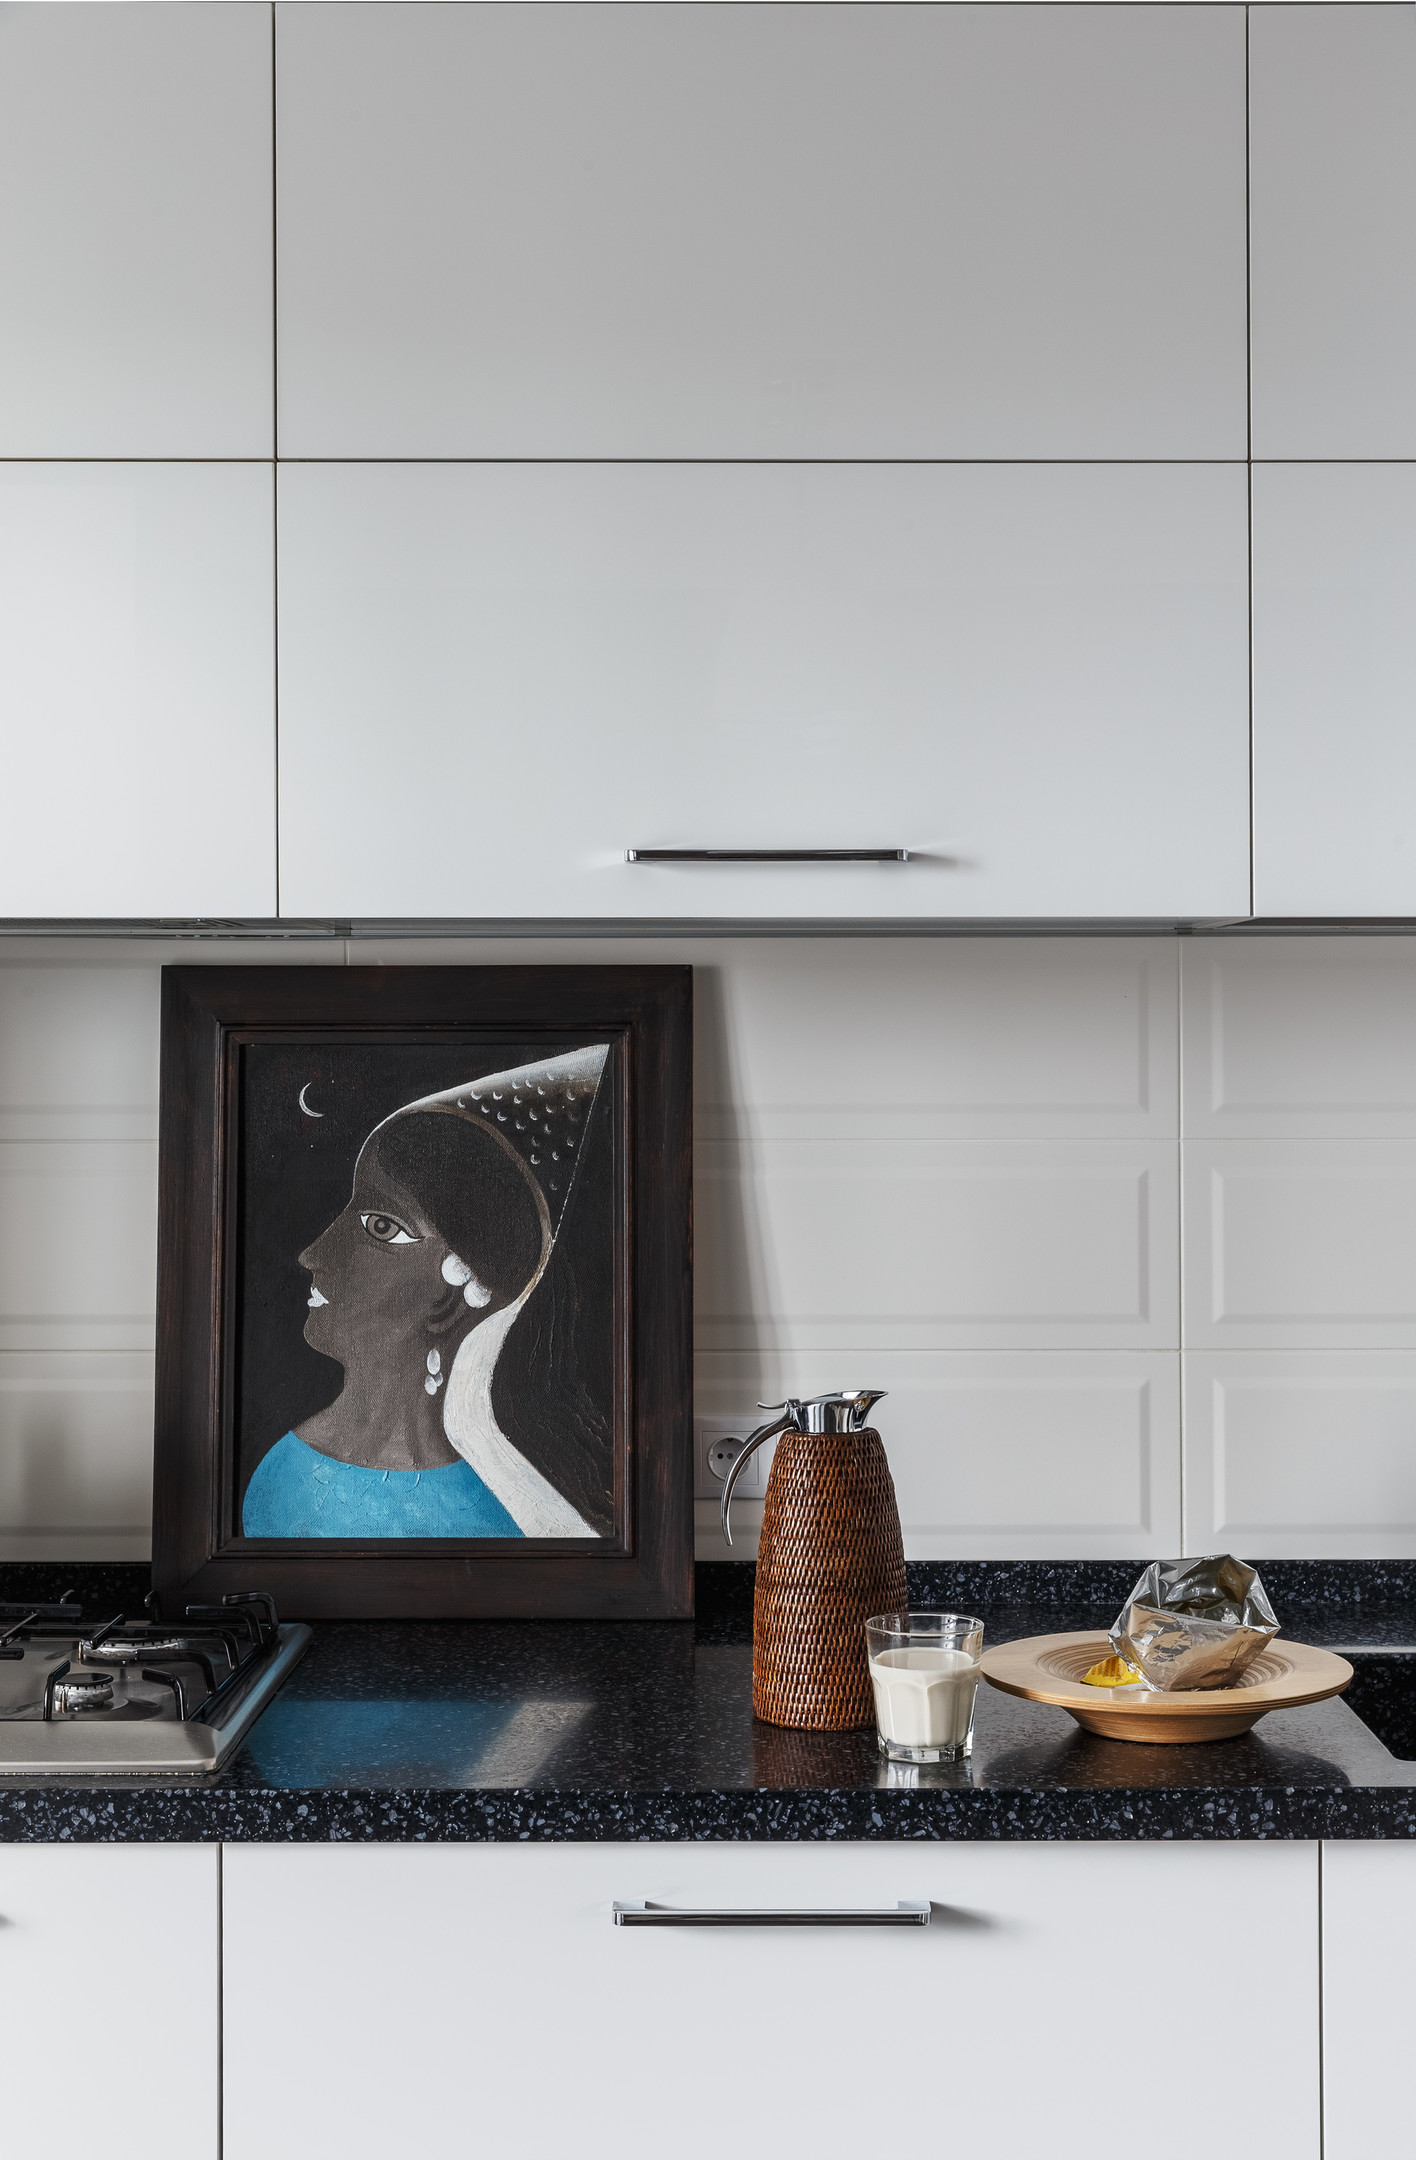 Phòng bếp sử dụng gạch lát sàn màu xám tương đồng với khu vực hành lang, tạo sự tương phản nhẹ nhàng với gam màu trắng chủ đạo của tường và tủ bếp.